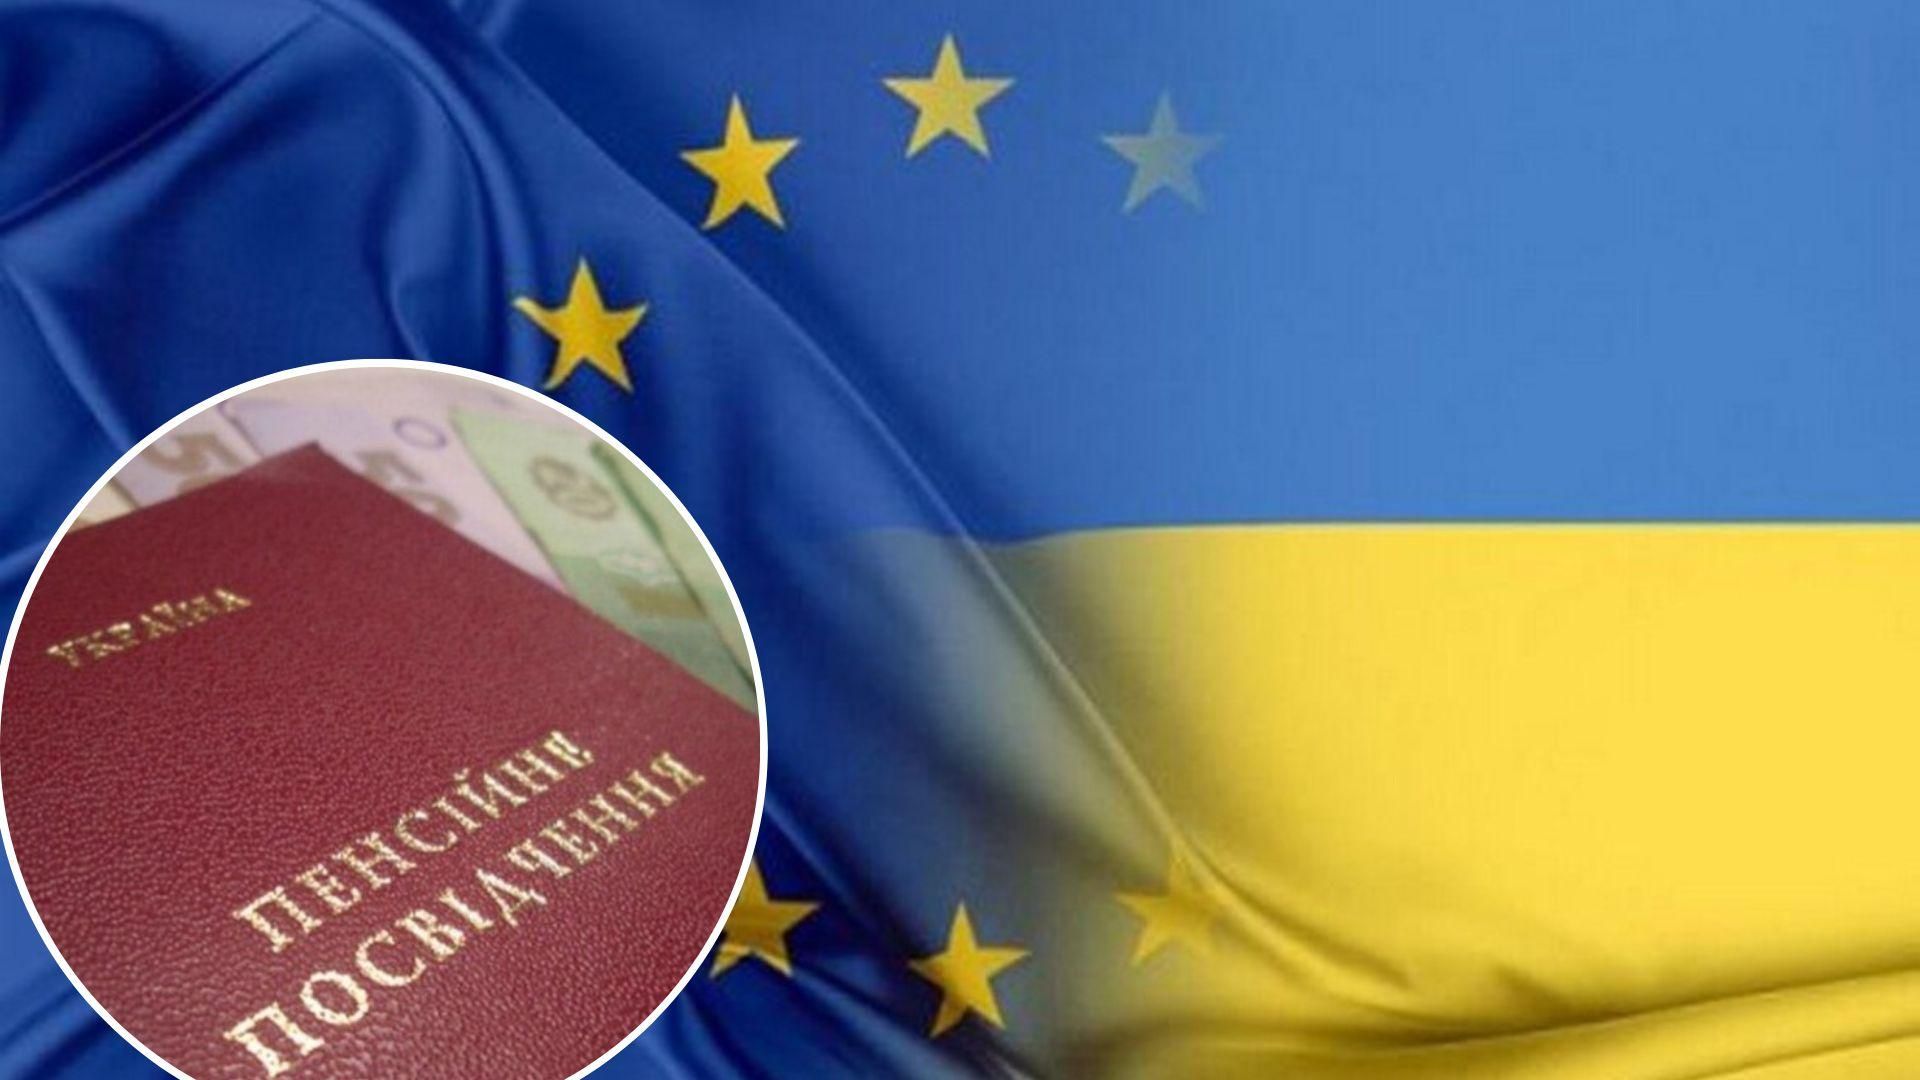 Пенсии для украинцев в ЕС - Украина и страны Евросоюза могут выплачивать вместе